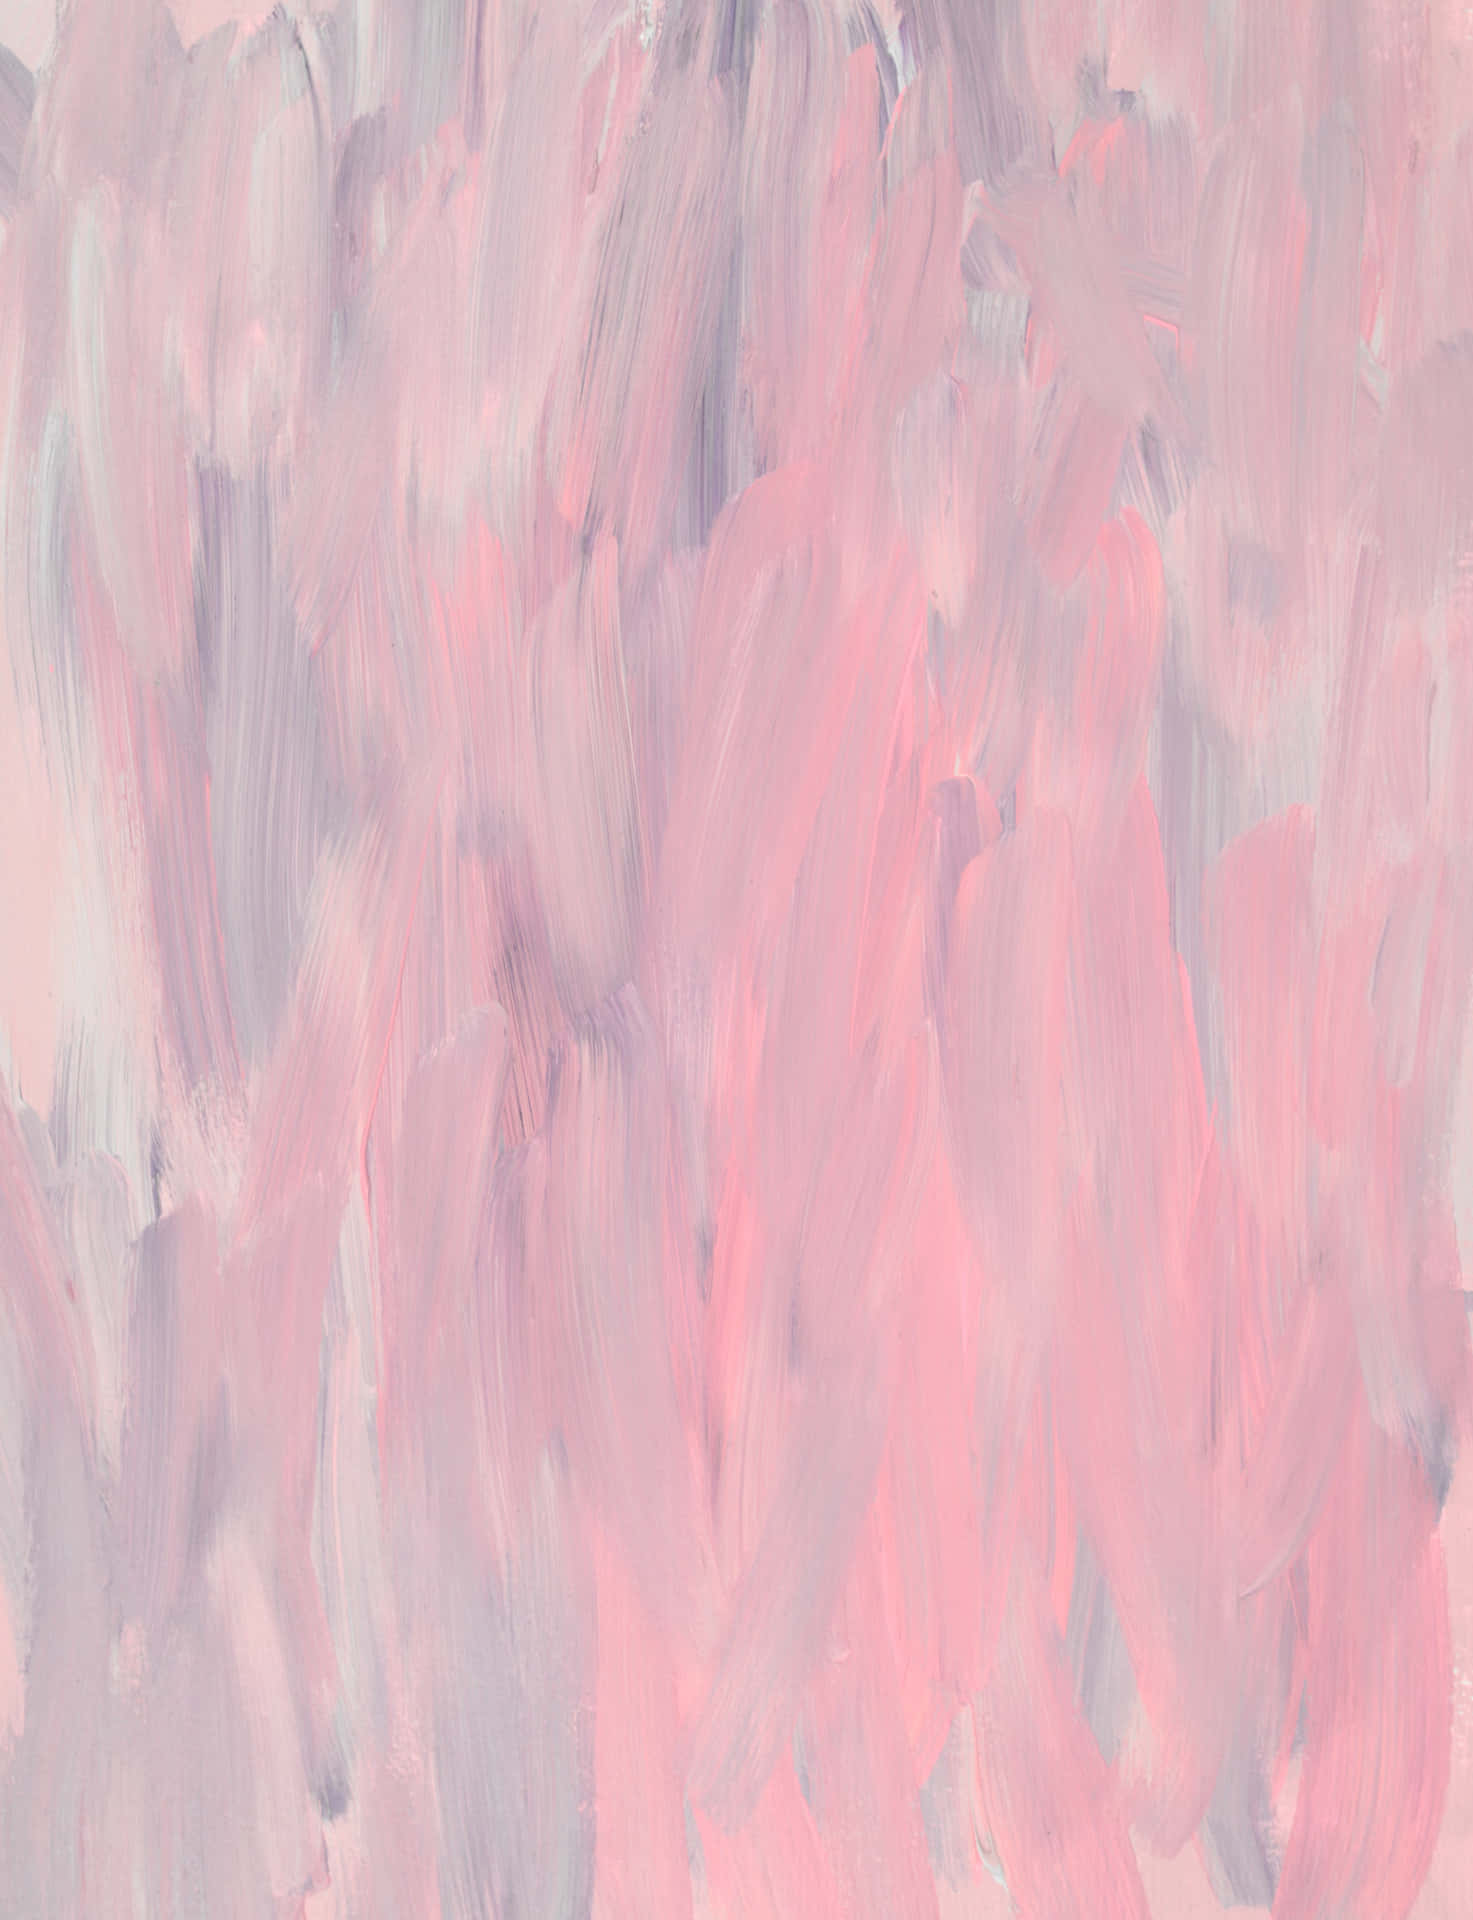 Unapintura De Pintura Rosa Y Gris